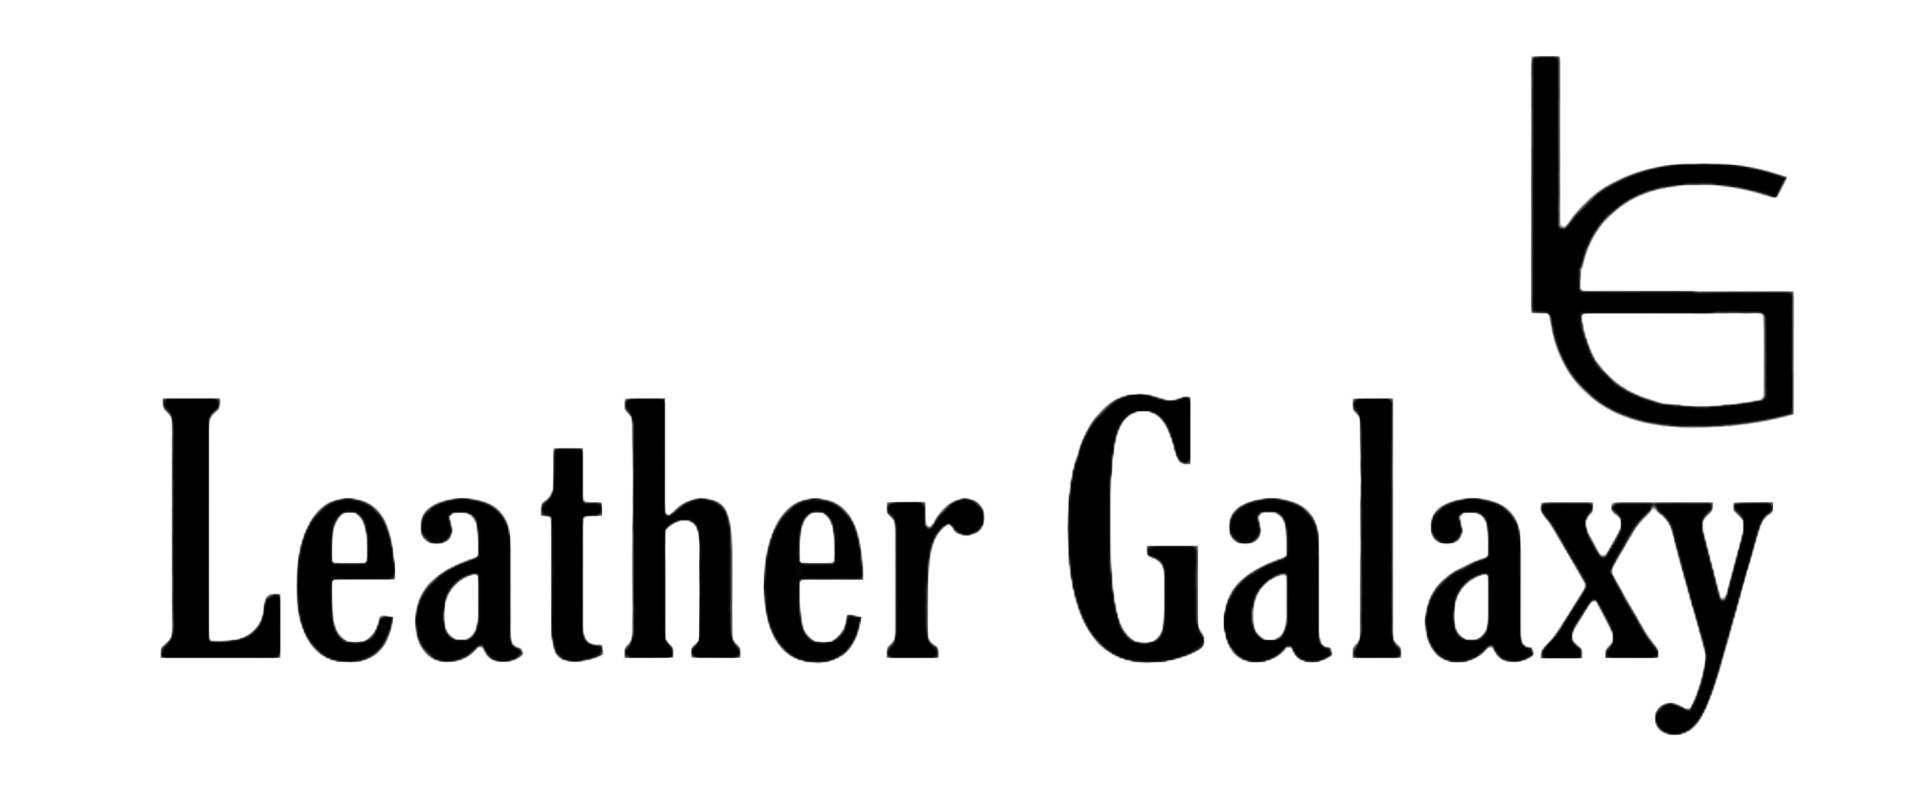 leather galaxy logo